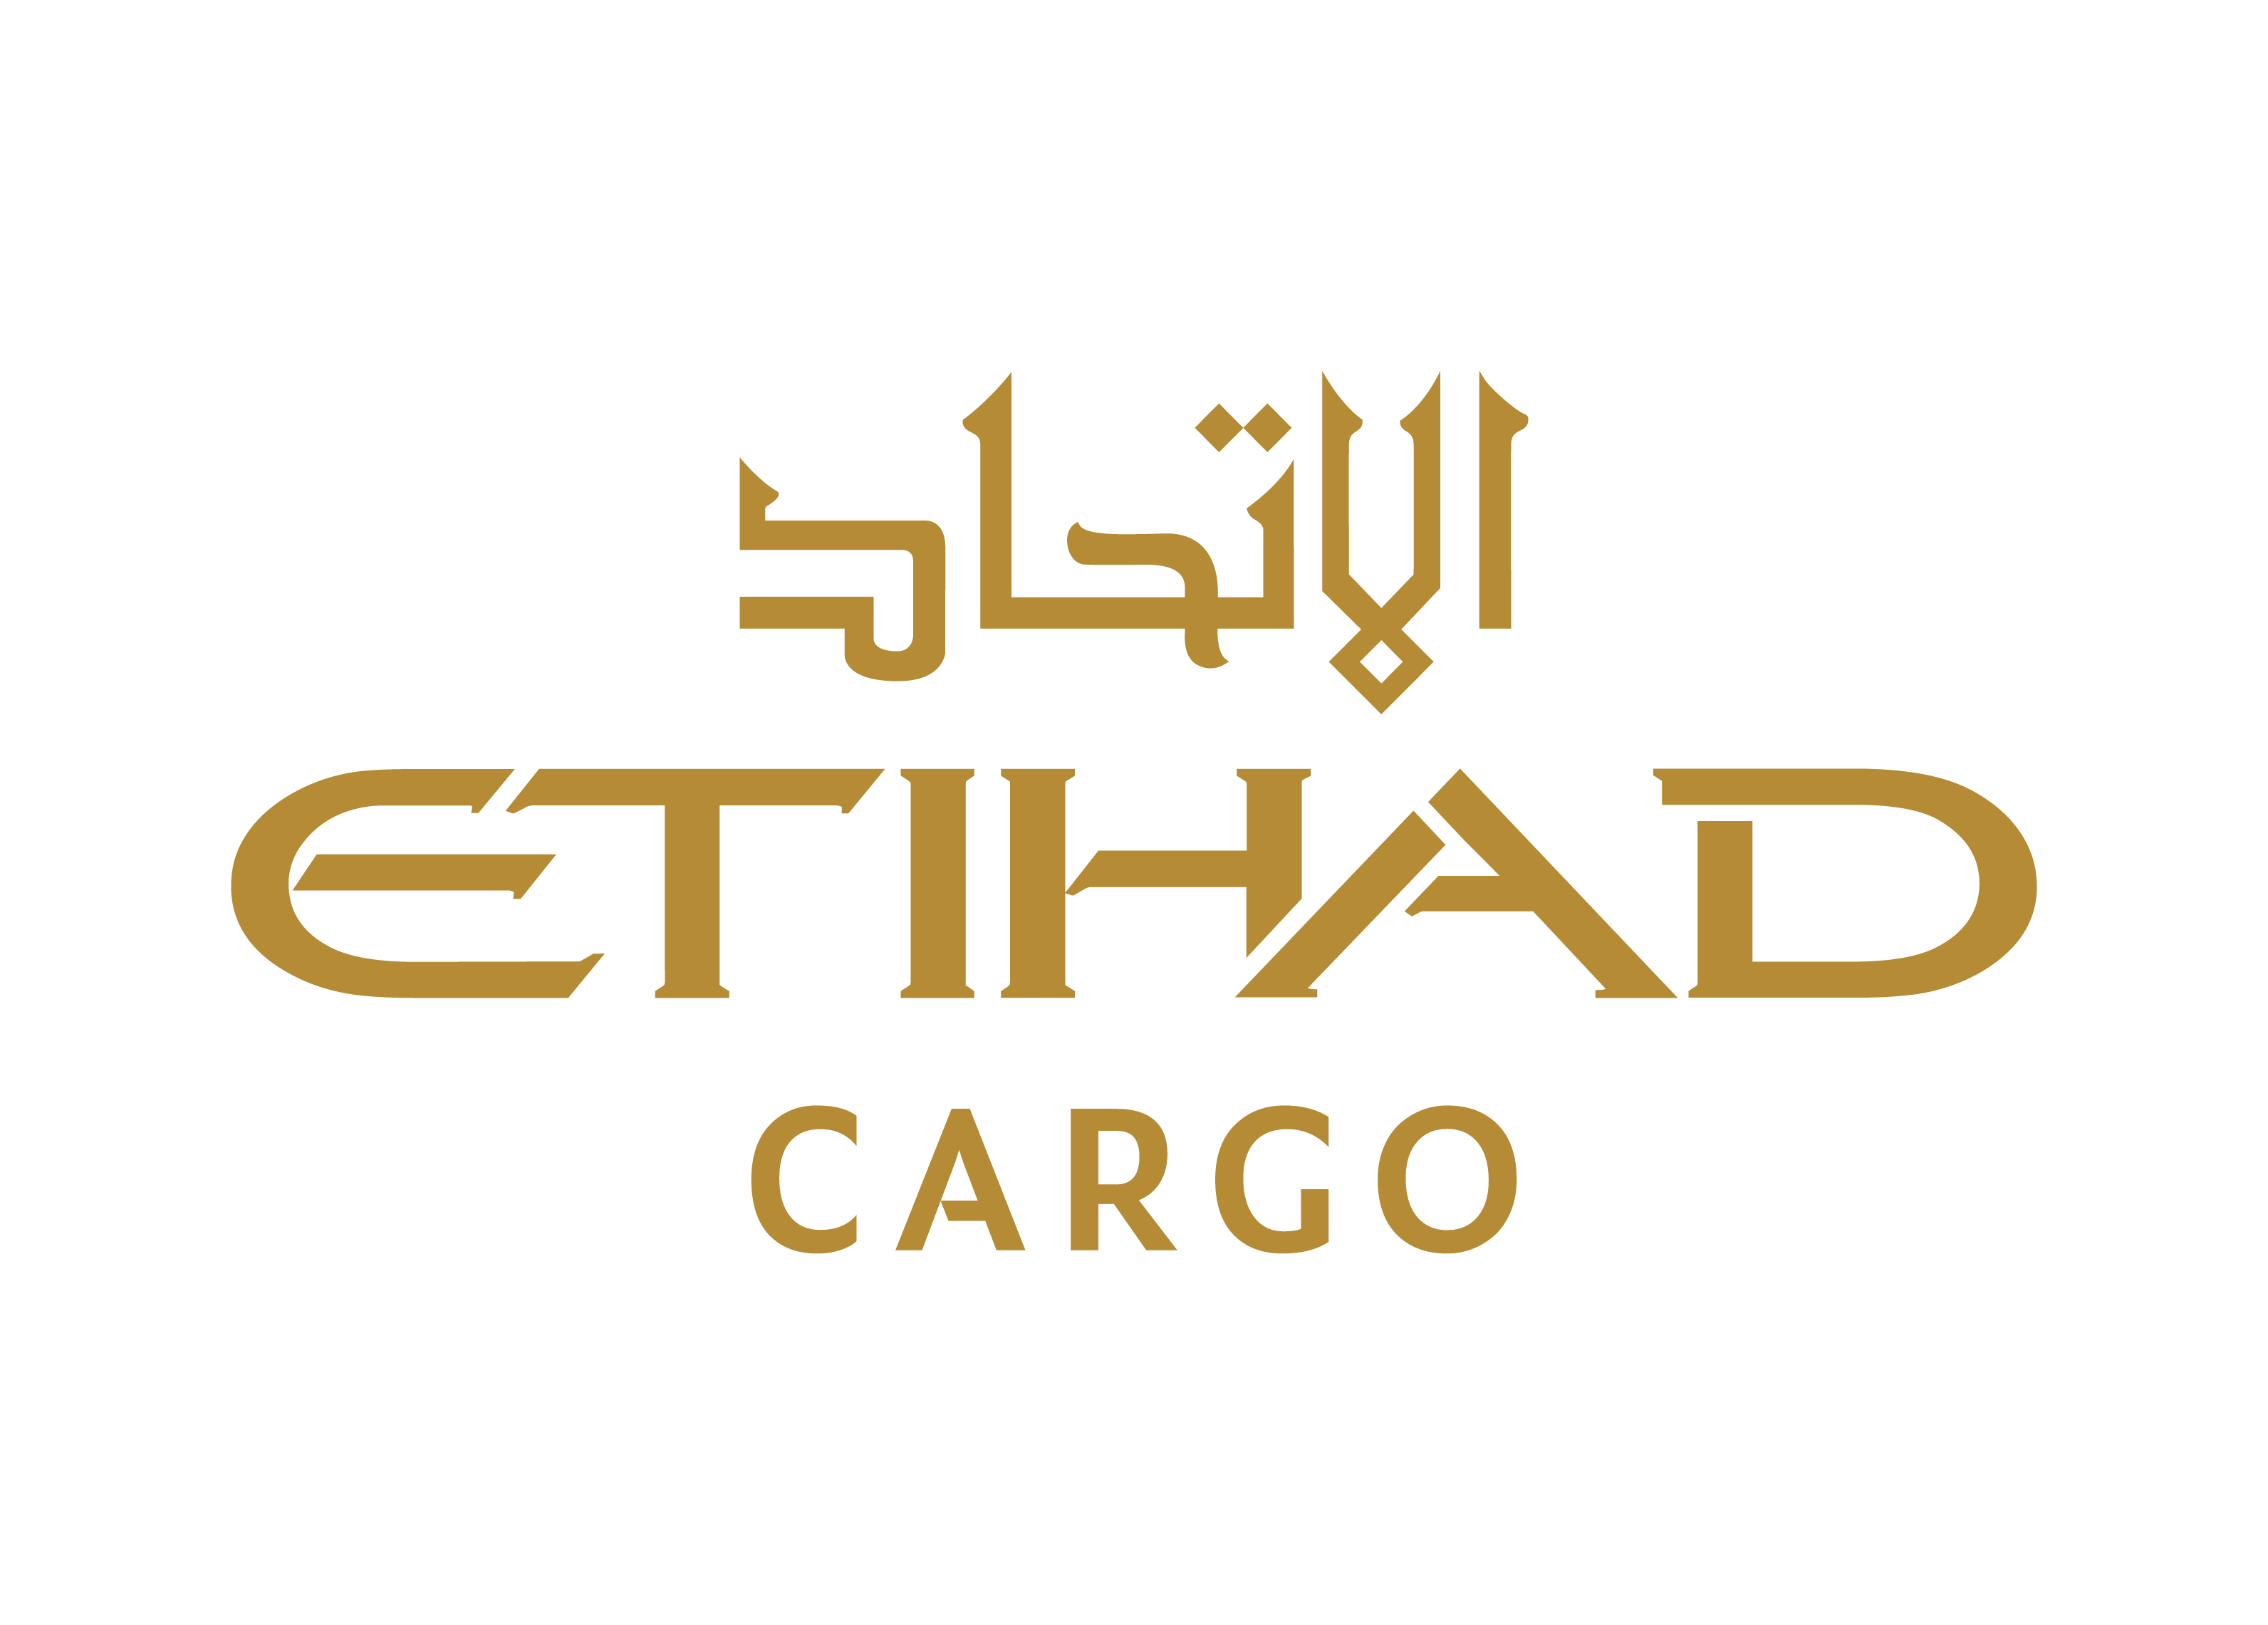 Etihad Airport Services – Cargo